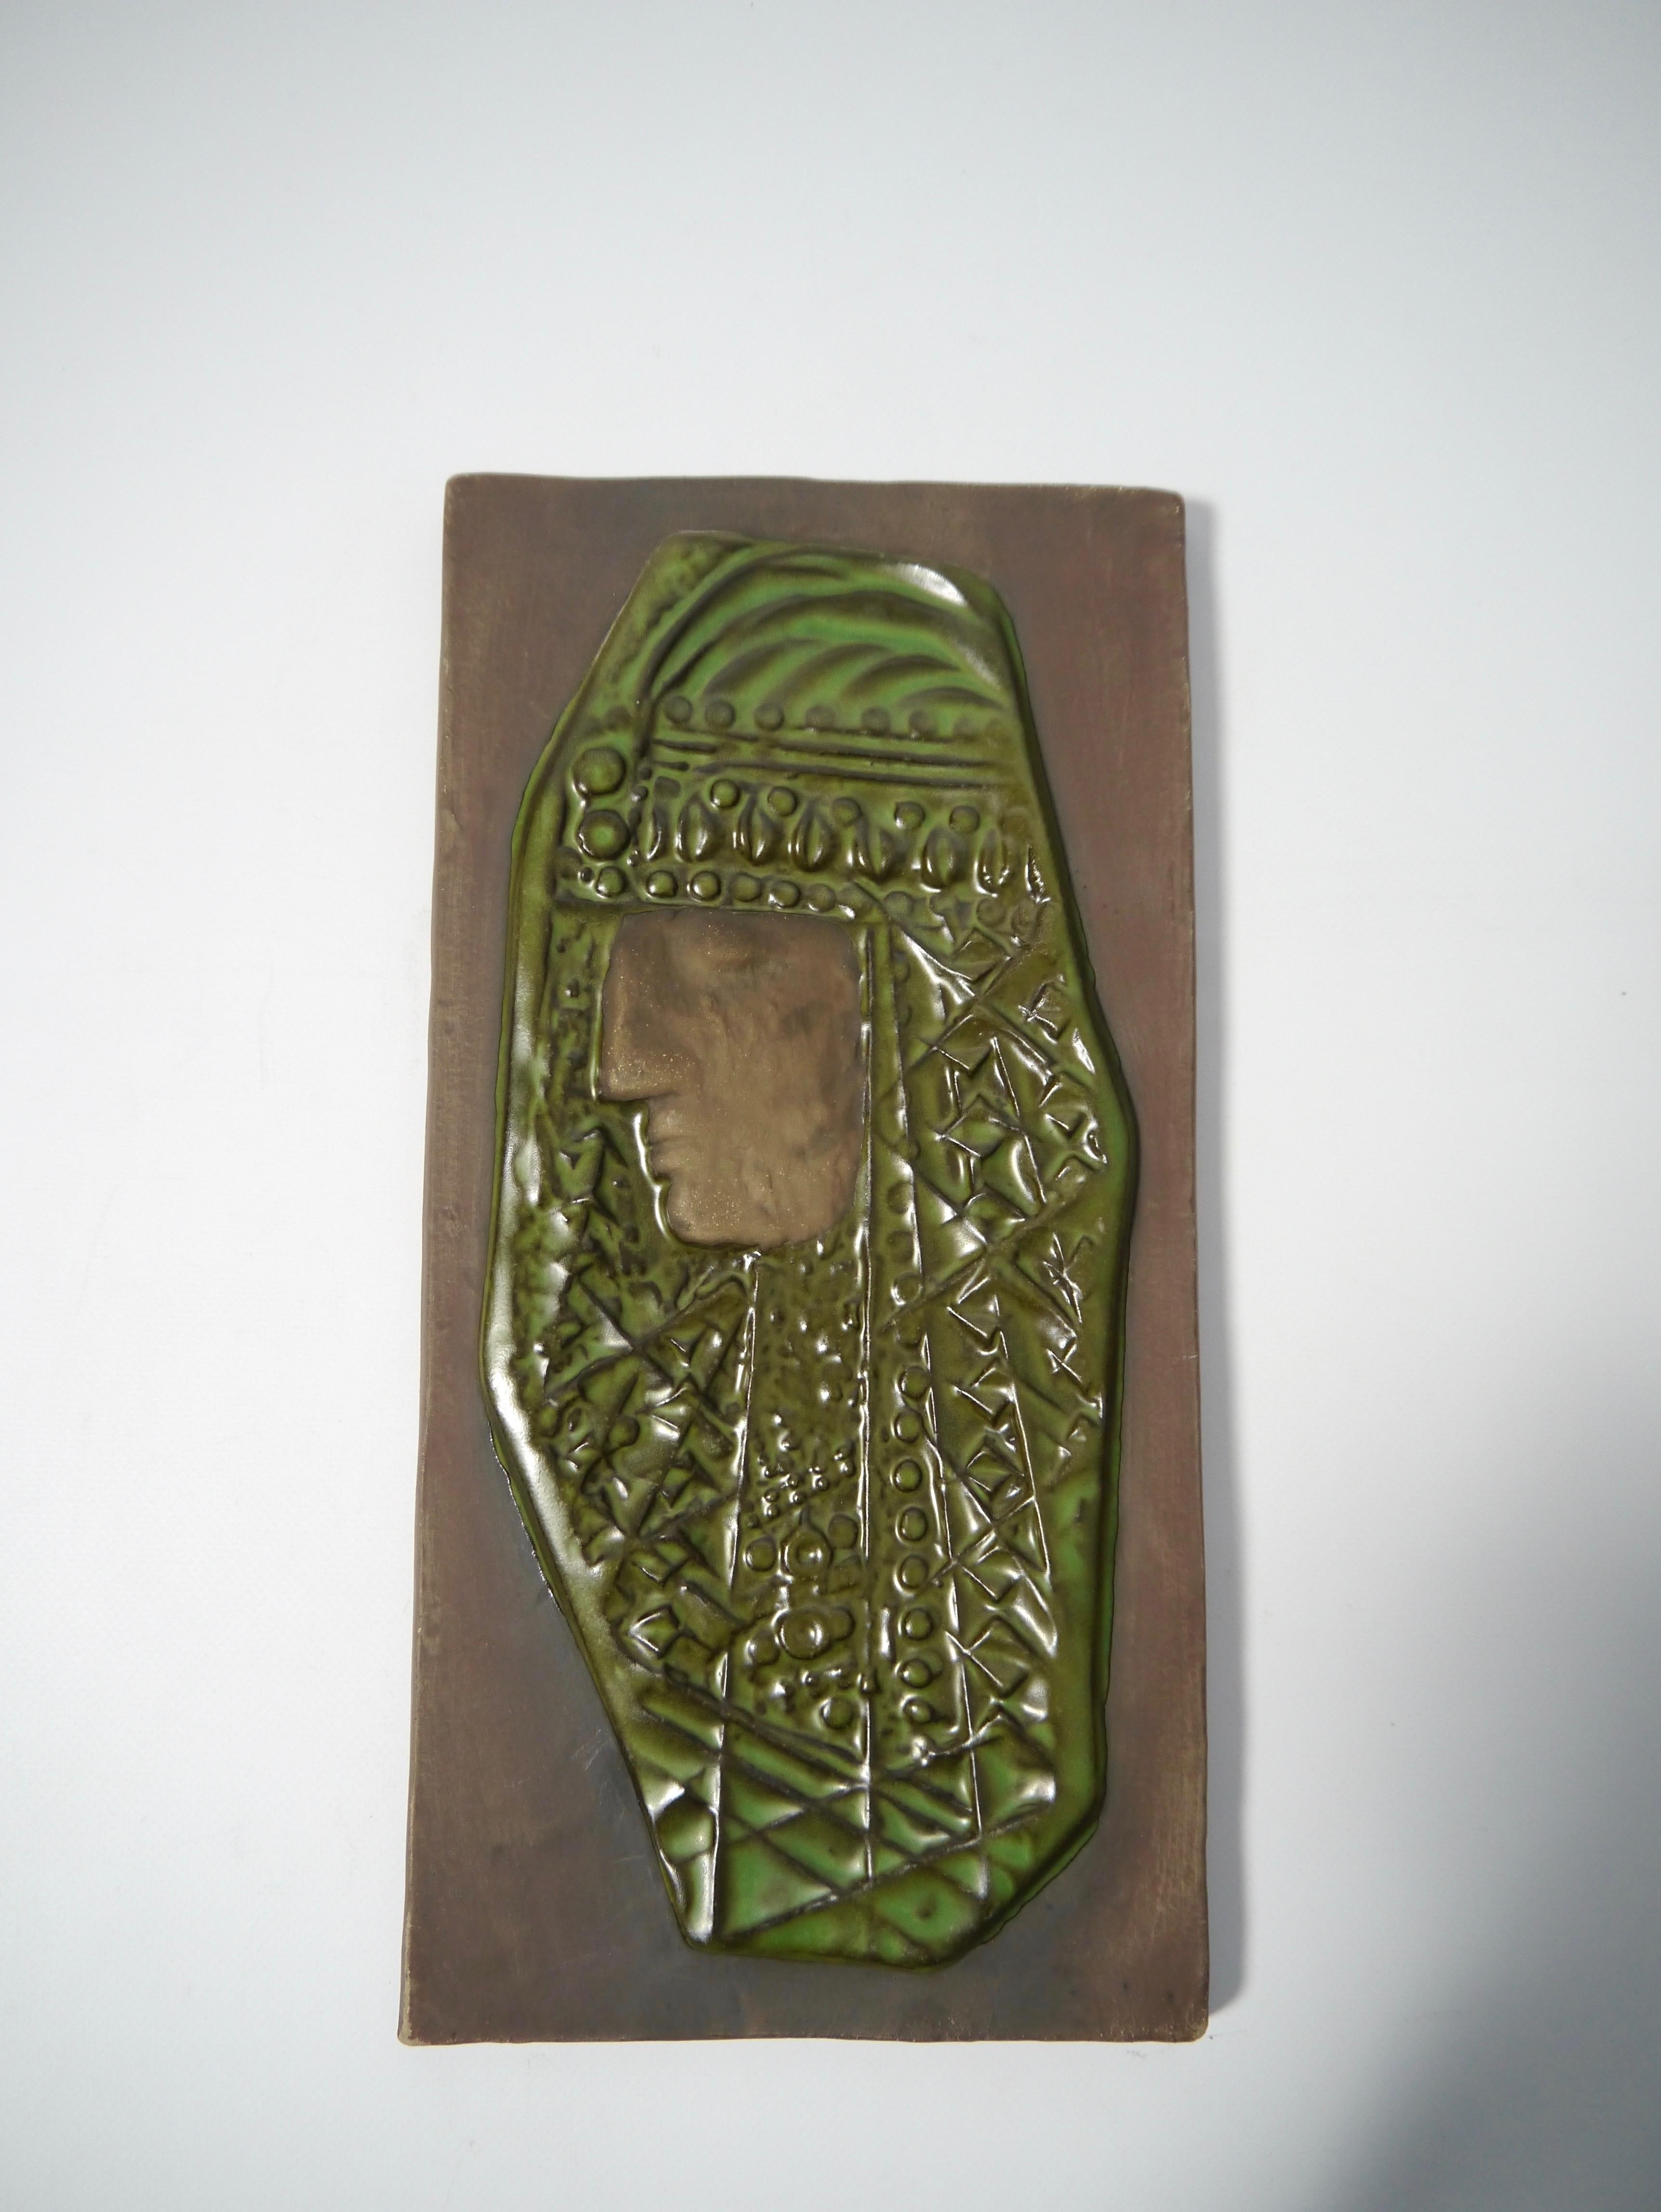 Wandtafel aus glasierter Keramik, hergestellt von Ester Wallin für Upsala Ekeby Ende der 1960er Jahre. Darstellung einer männlichen Figur aus dem Nahen Osten im scharf geschnittenen Gesichtsprofil, möglicherweise Lawrence von Arabien. Kennzeichnung